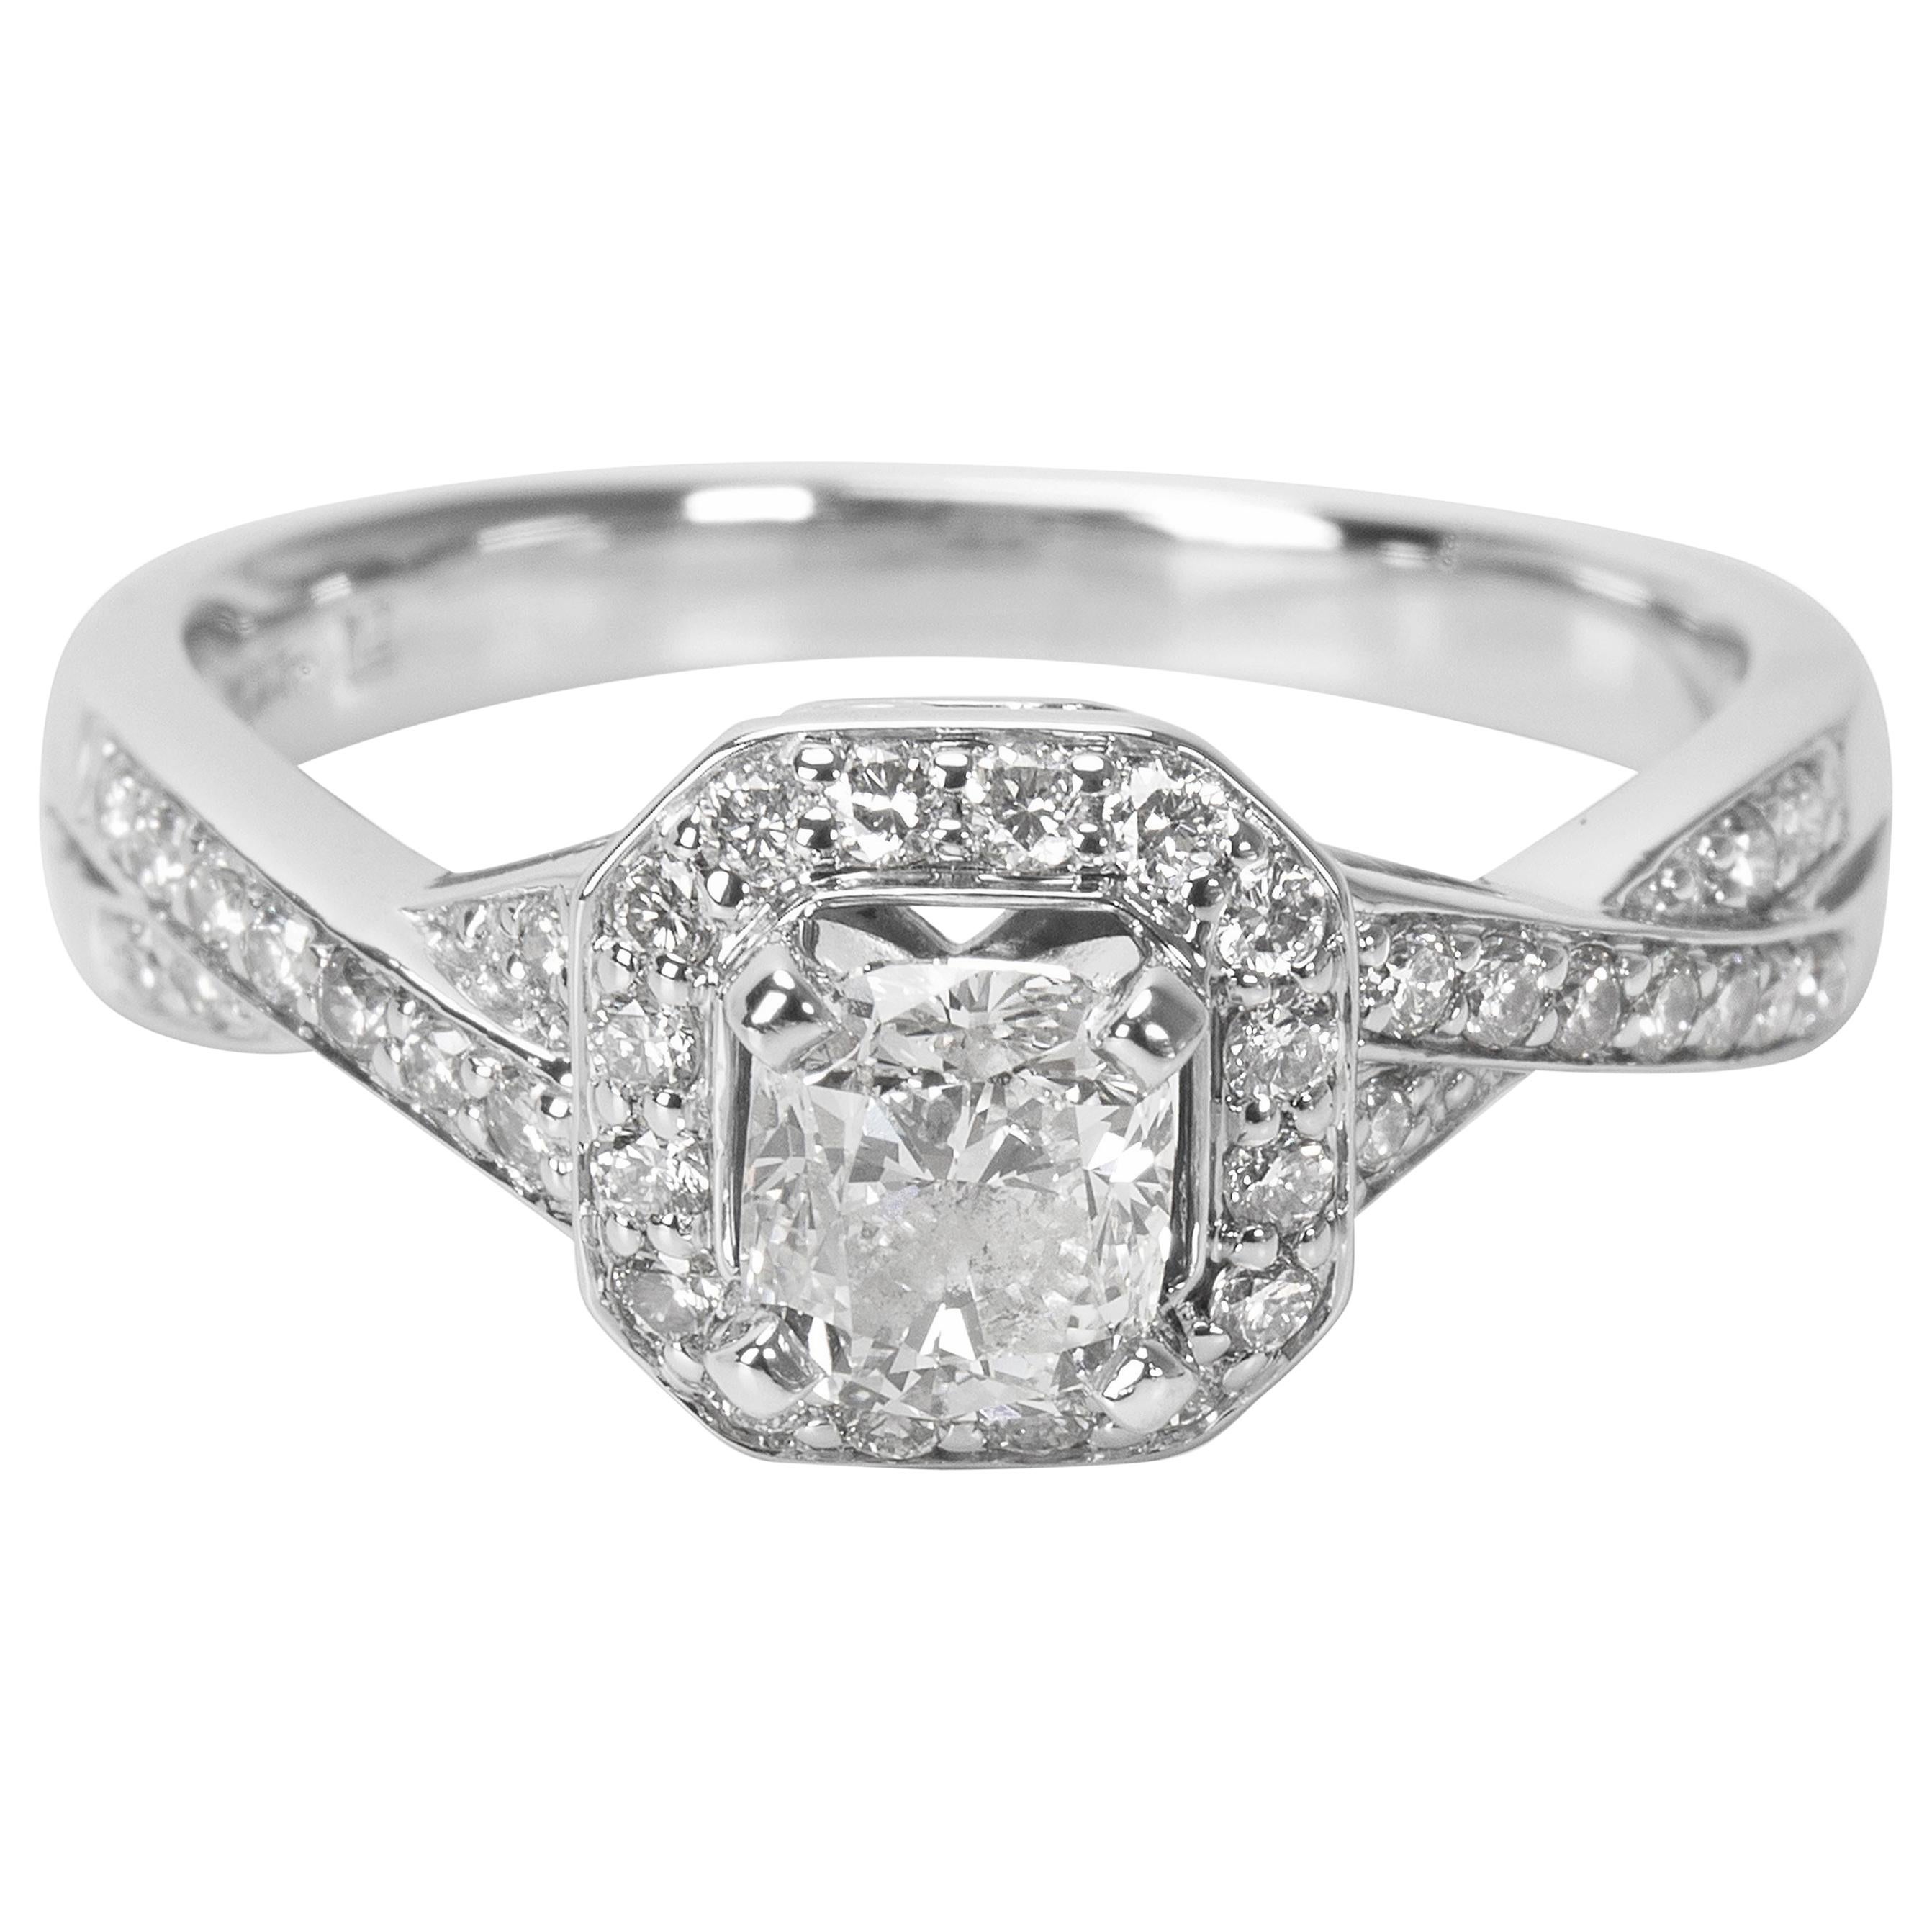 GSI Certified Cushion Diamond Engagement Ring in 14 Karat White Gold 1.00 Carat